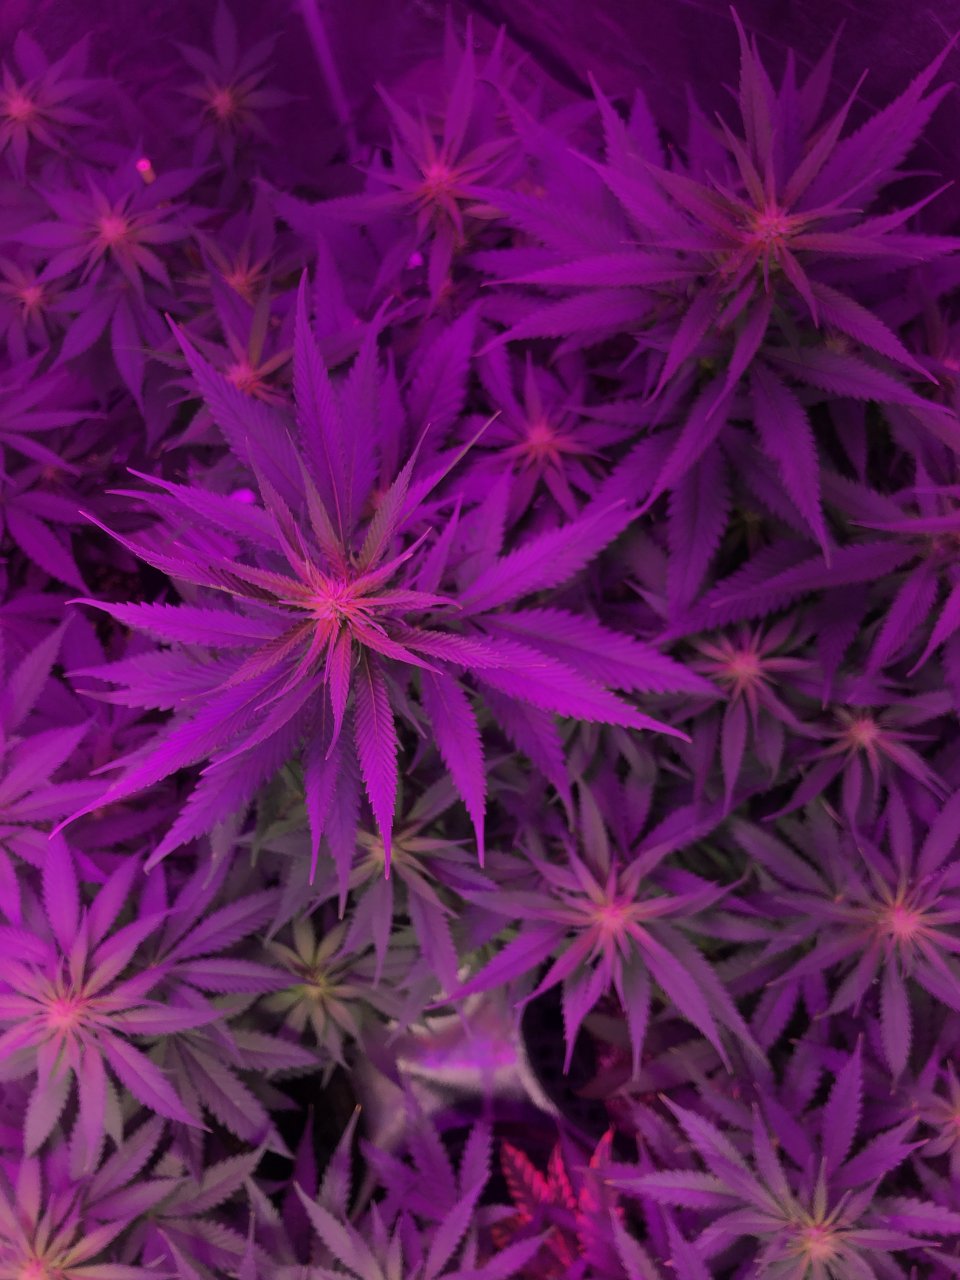 Purple Haze - week 3 of flower